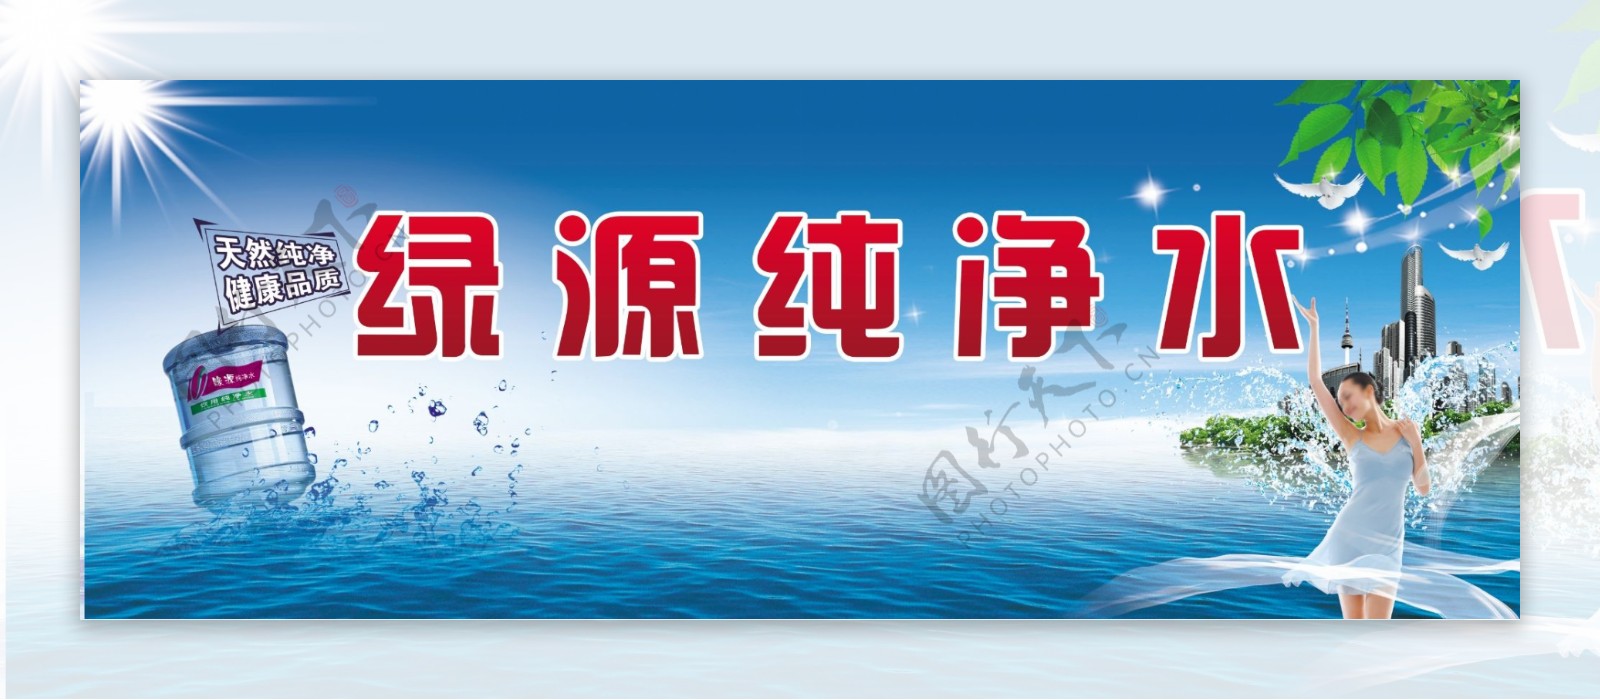 纯净水宣传广告